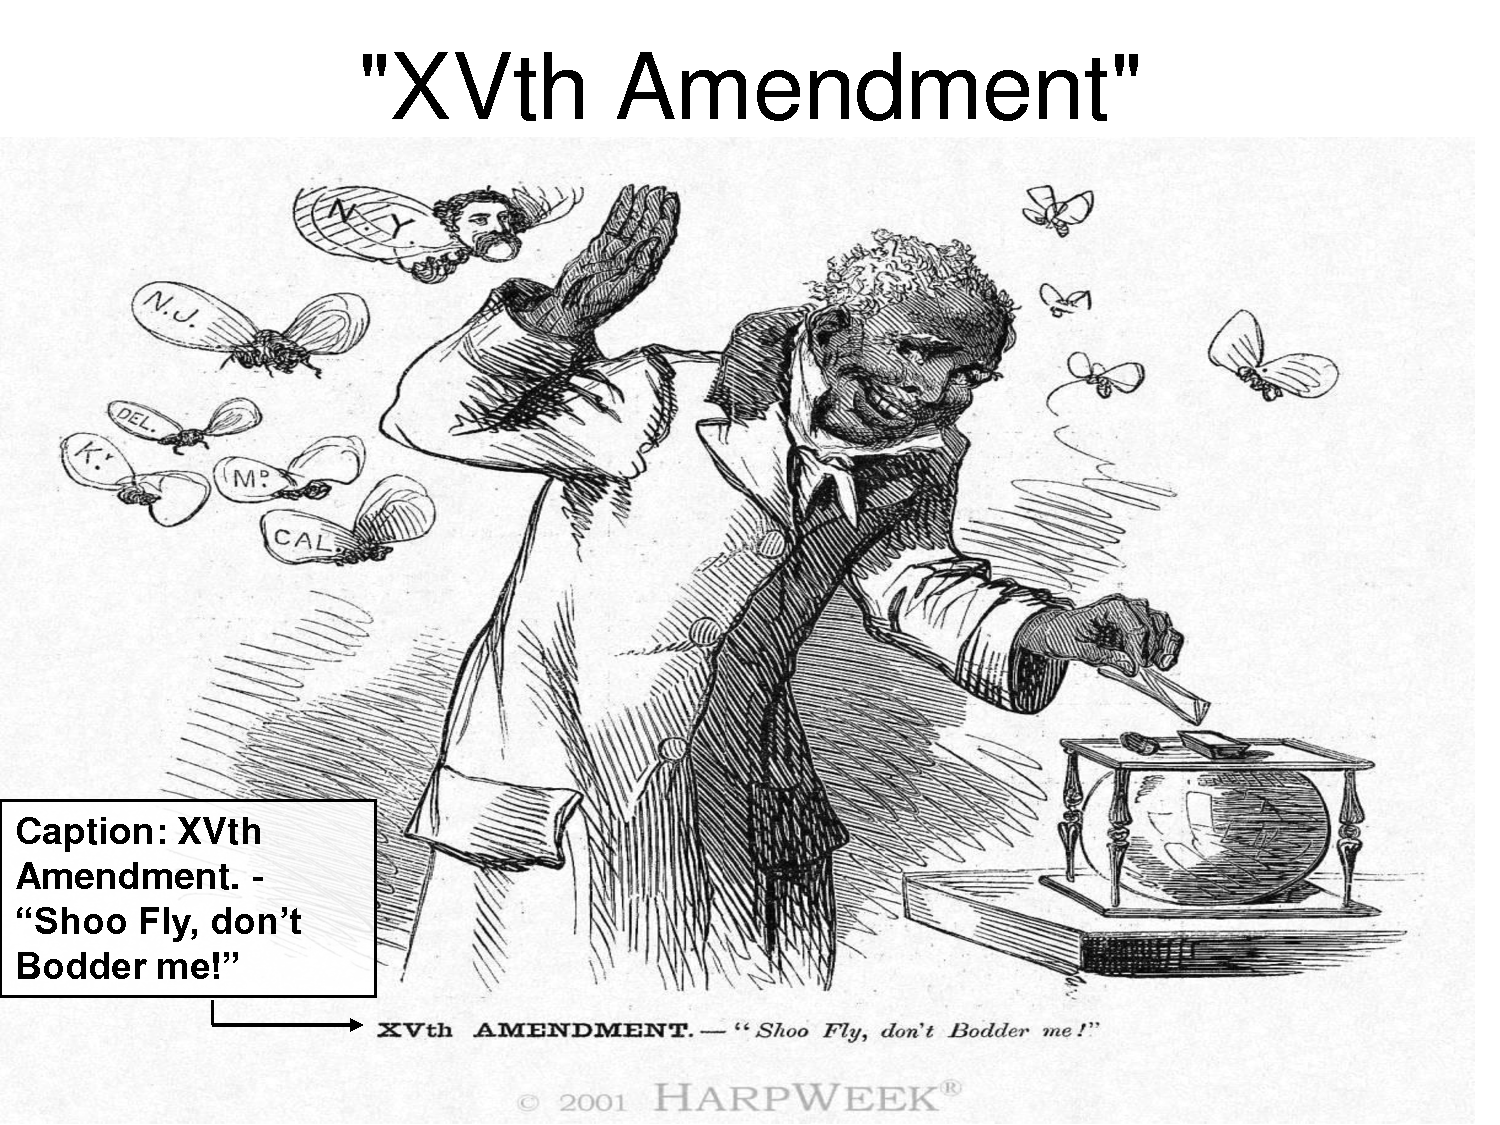 The 15th Amendment Clipart